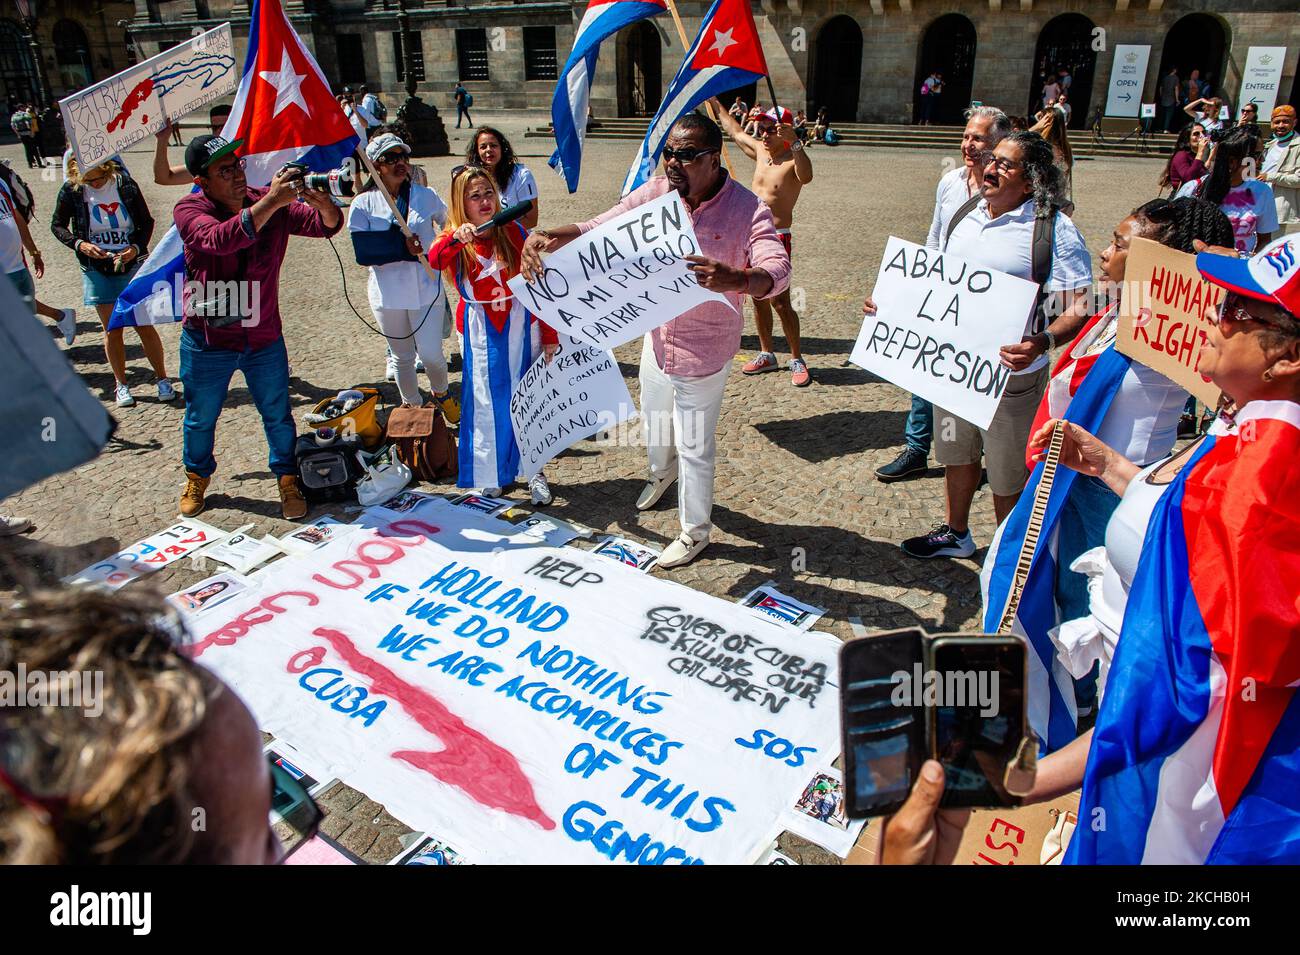 Das kubanische Volk trägt kubanische Fahnen und hält Plakate, während es den Reden zuhört, während der Demonstration zur Unterstützung Kubas, die am 17.. Juli 2021 in Amsterdam organisiert wurde. (Foto von Romy Arroyo Fernandez/NurPhoto) Stockfoto